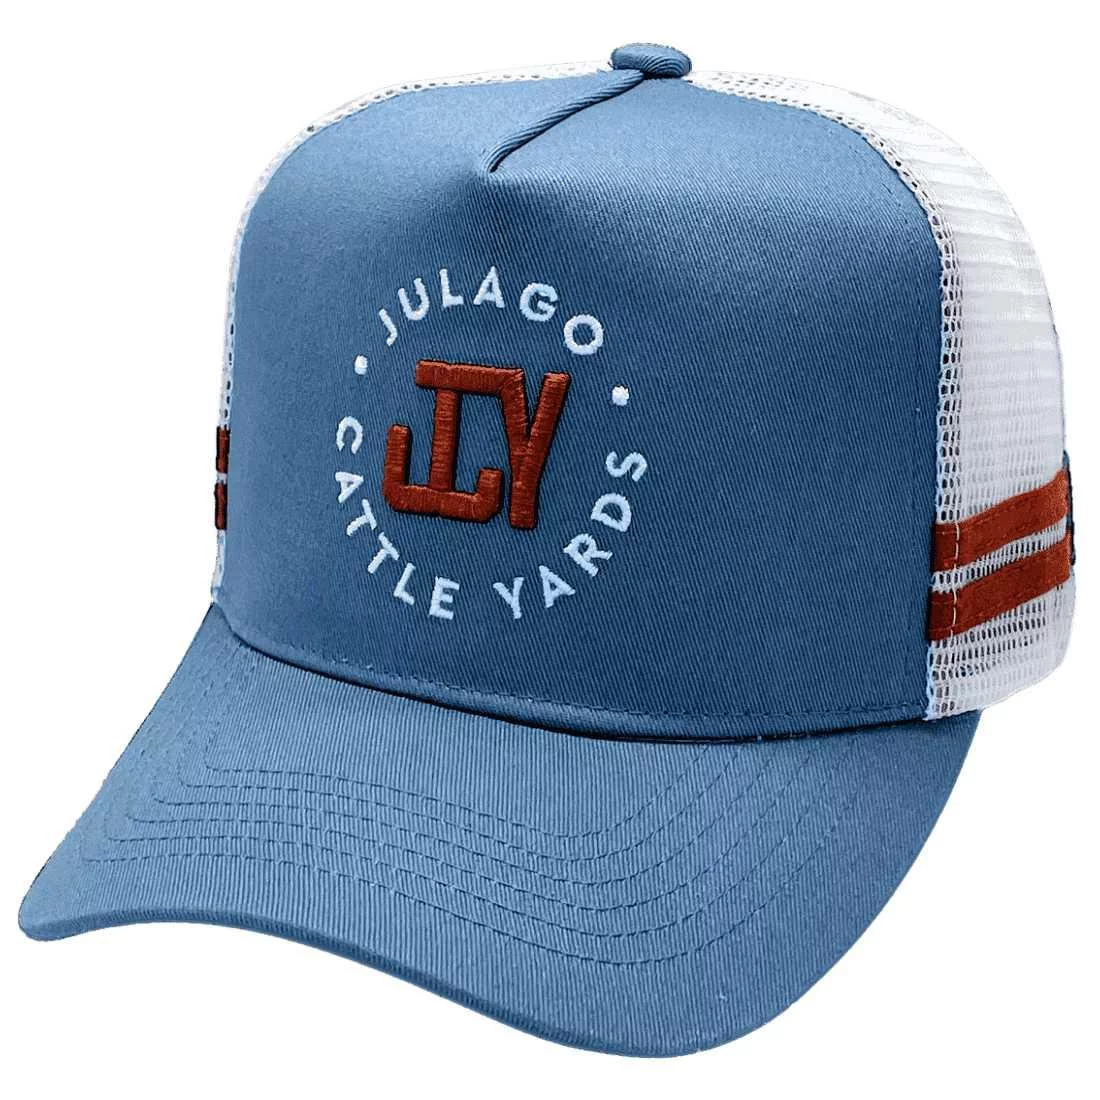 Julago Cattle Yards Townsville HP Midrange Aussie Trucker Hats